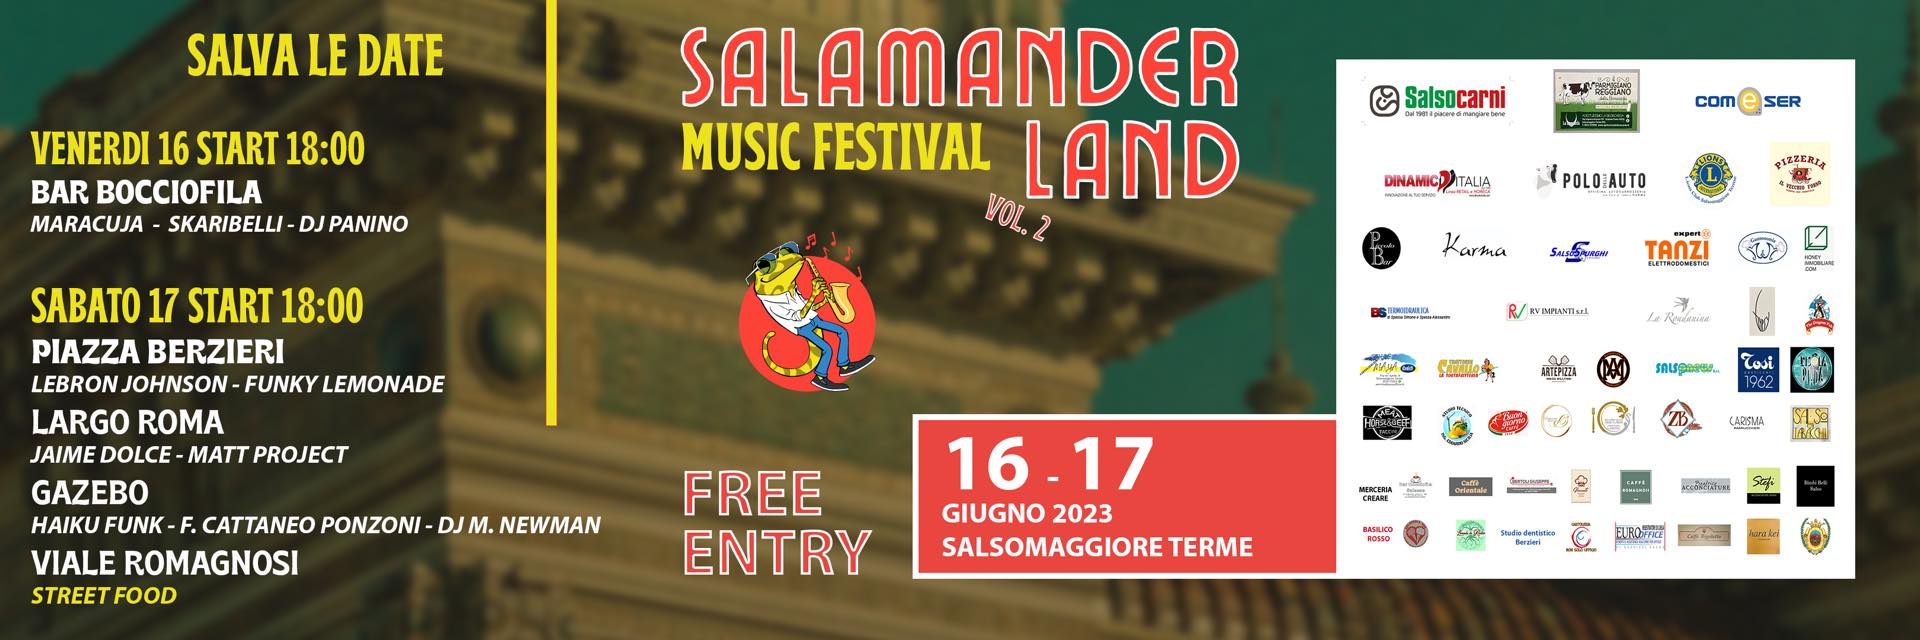 Salamanderland Music Festival esperienza musicale unica a Salsomaggiore Terme - Mr Paloma